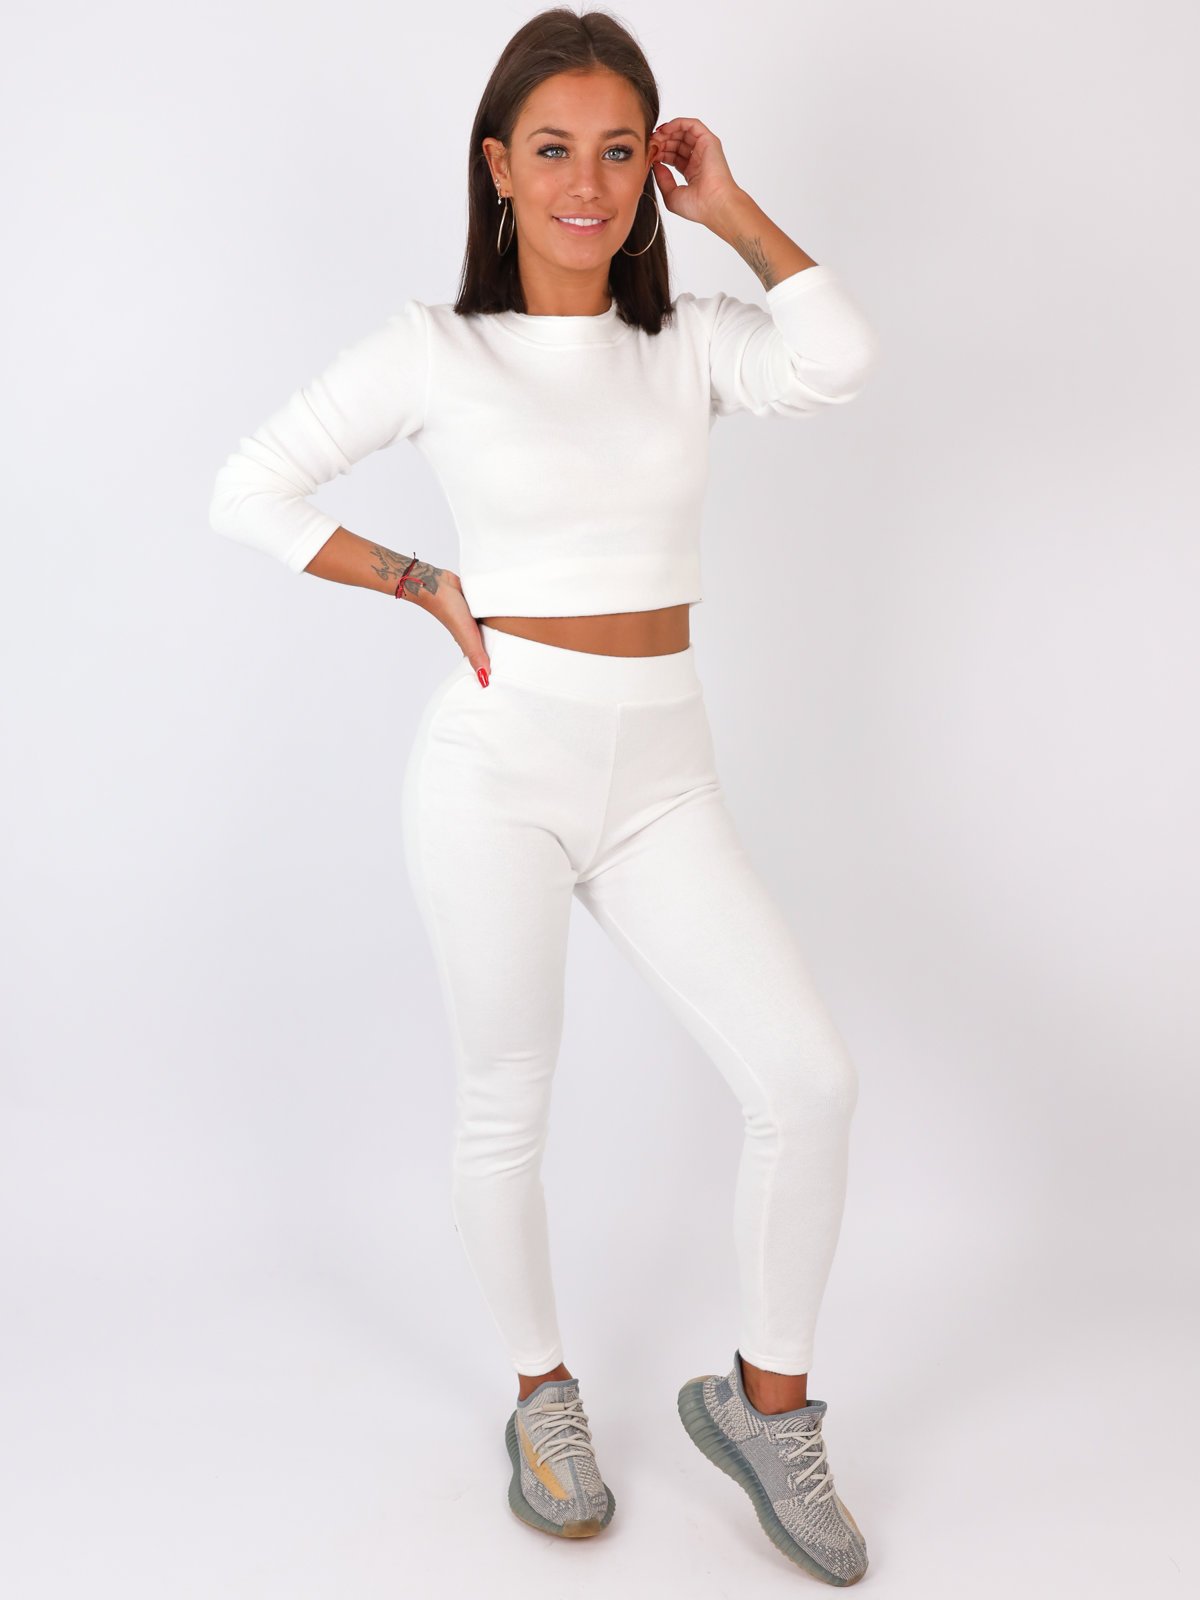 Dres swetrowy komplet krótki top+legginsy biały b20 kk01